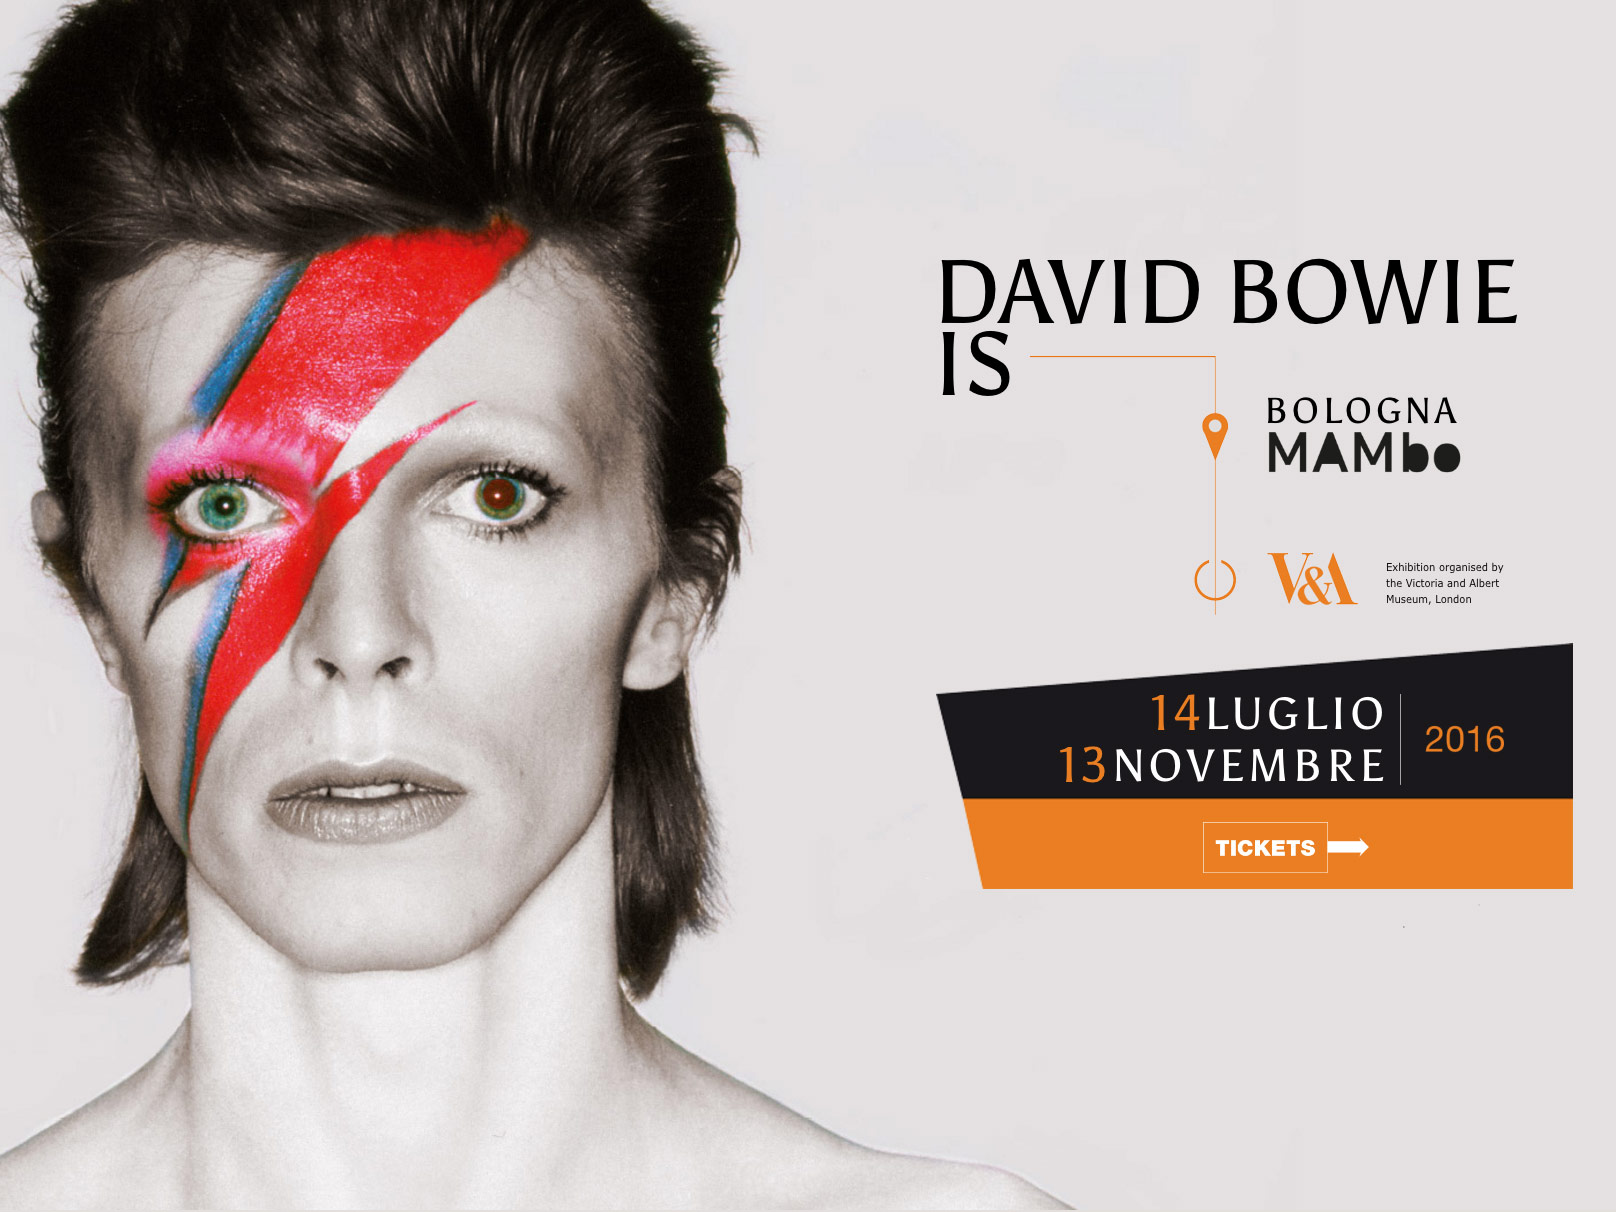 Visita la mostra David Bowie IS in esclusiva in Italia, ultima tappa europea, a Bologna dal 14 Luglio al 13 Novembre 2016